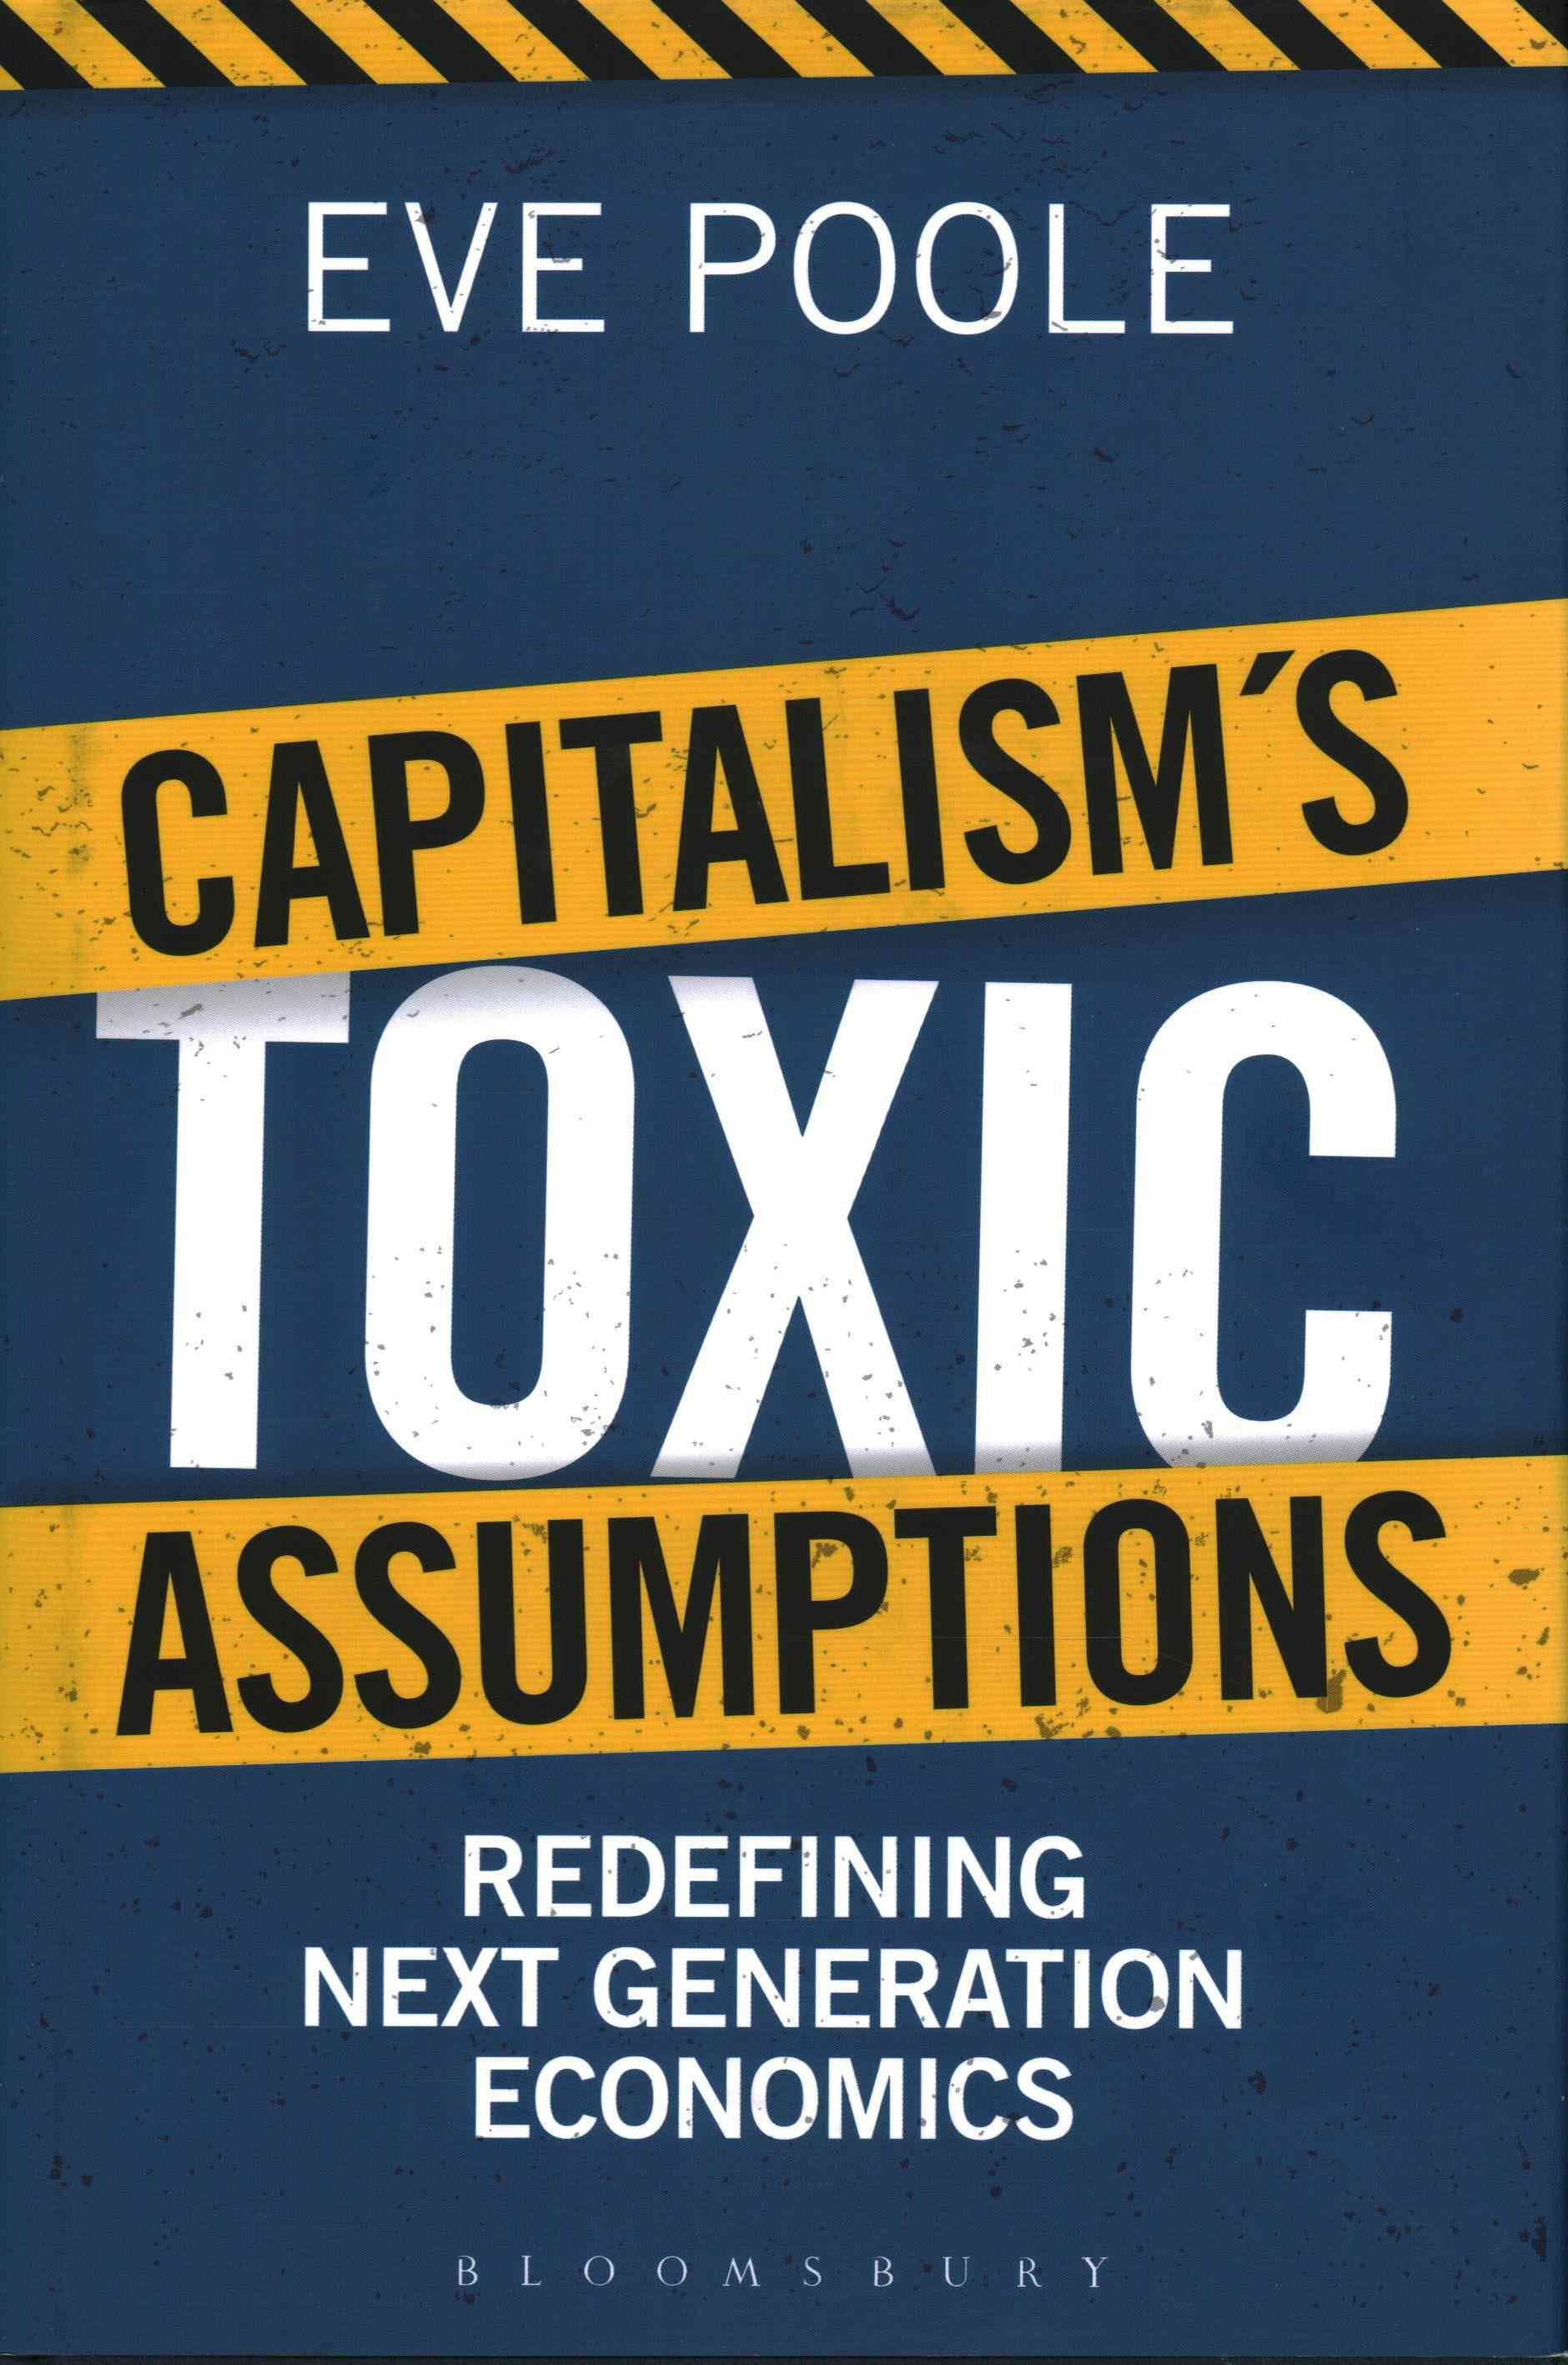 Capitalism's Toxic Assumptions